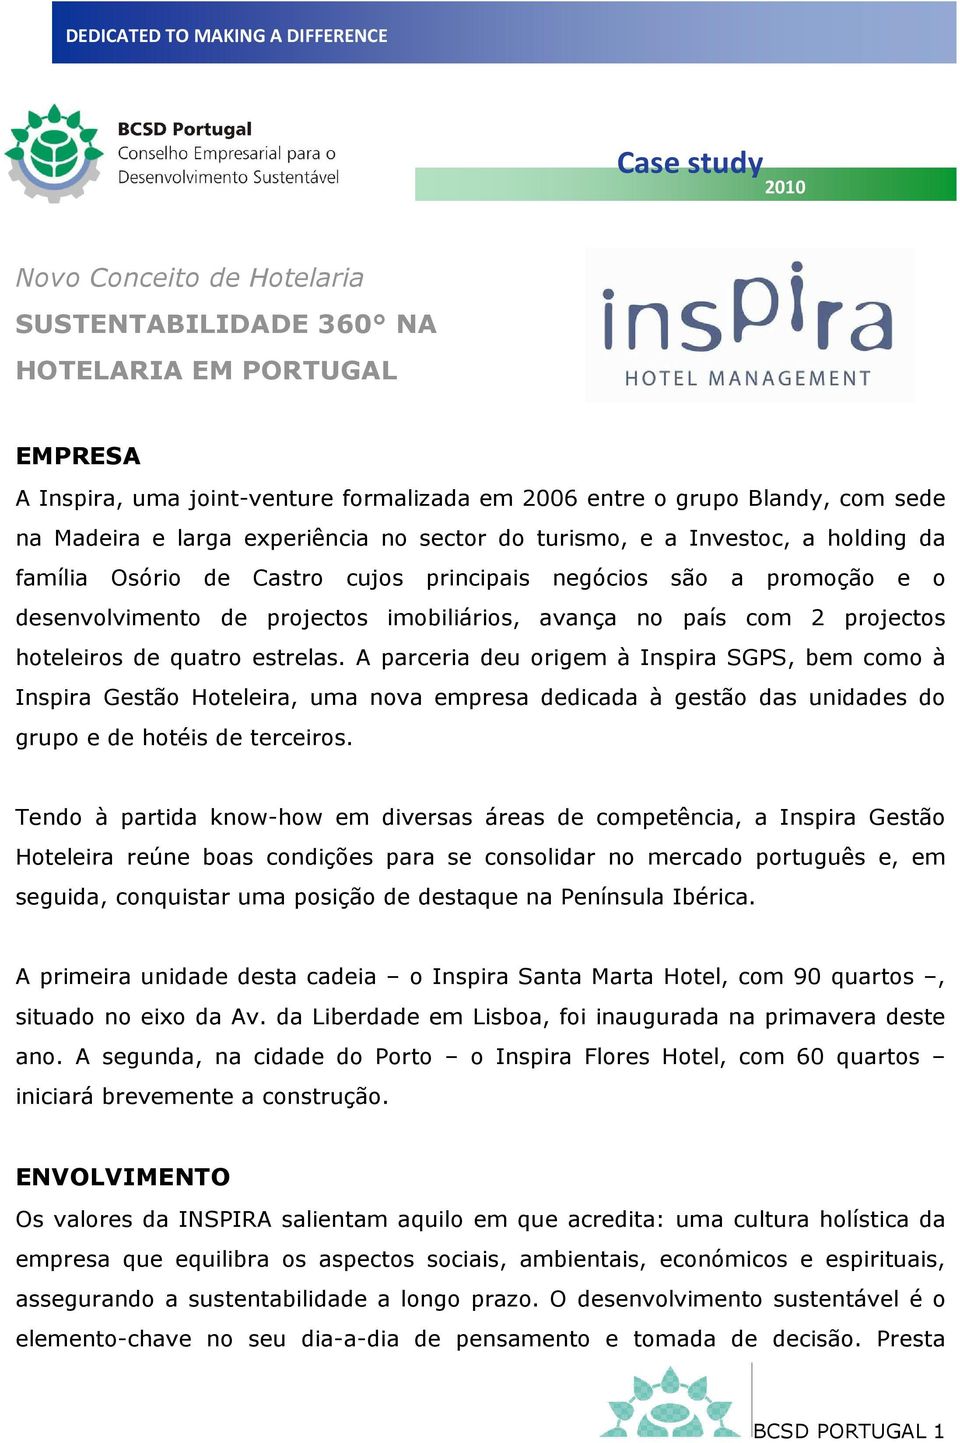 projectos hoteleiros de quatro estrelas. A parceria deu origem à Inspira SGPS, bem como à Inspira Gestão Hoteleira, uma nova empresa dedicada à gestão das unidades do grupo e de hotéis de terceiros.